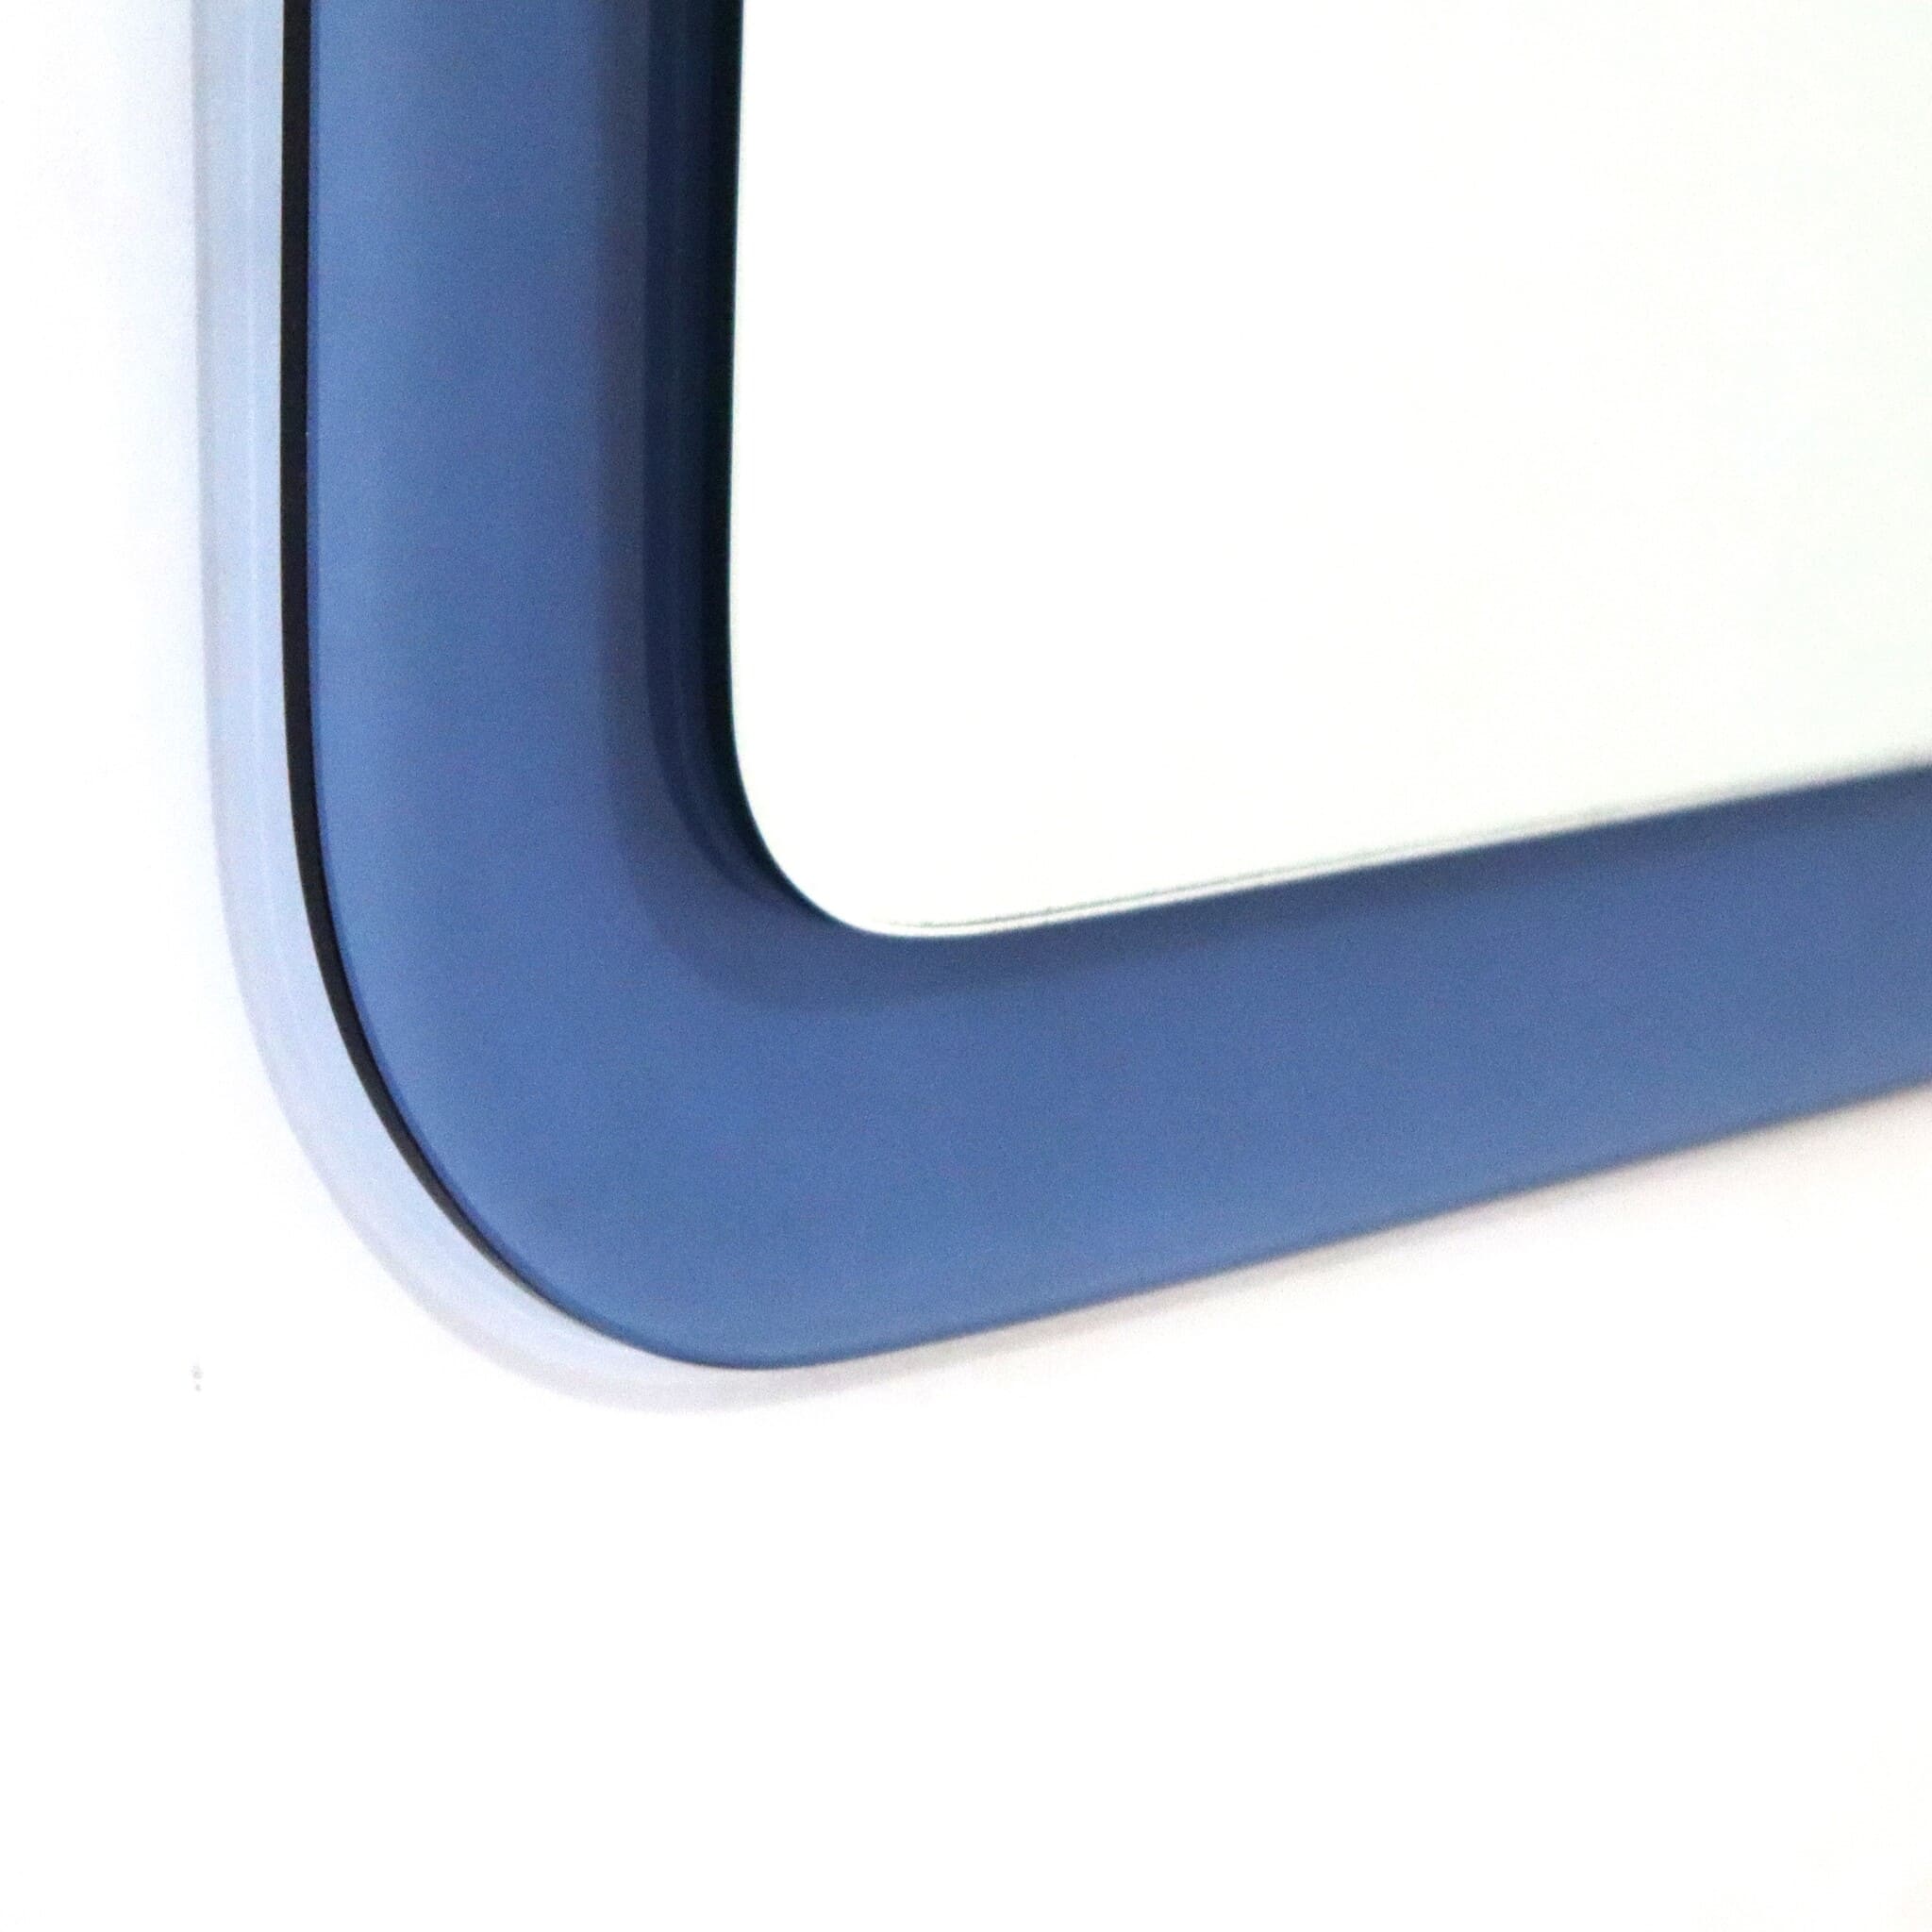 square-mirror-round-edges-cobalt-blue-70s-detail-left-corner-low-visionidepoca